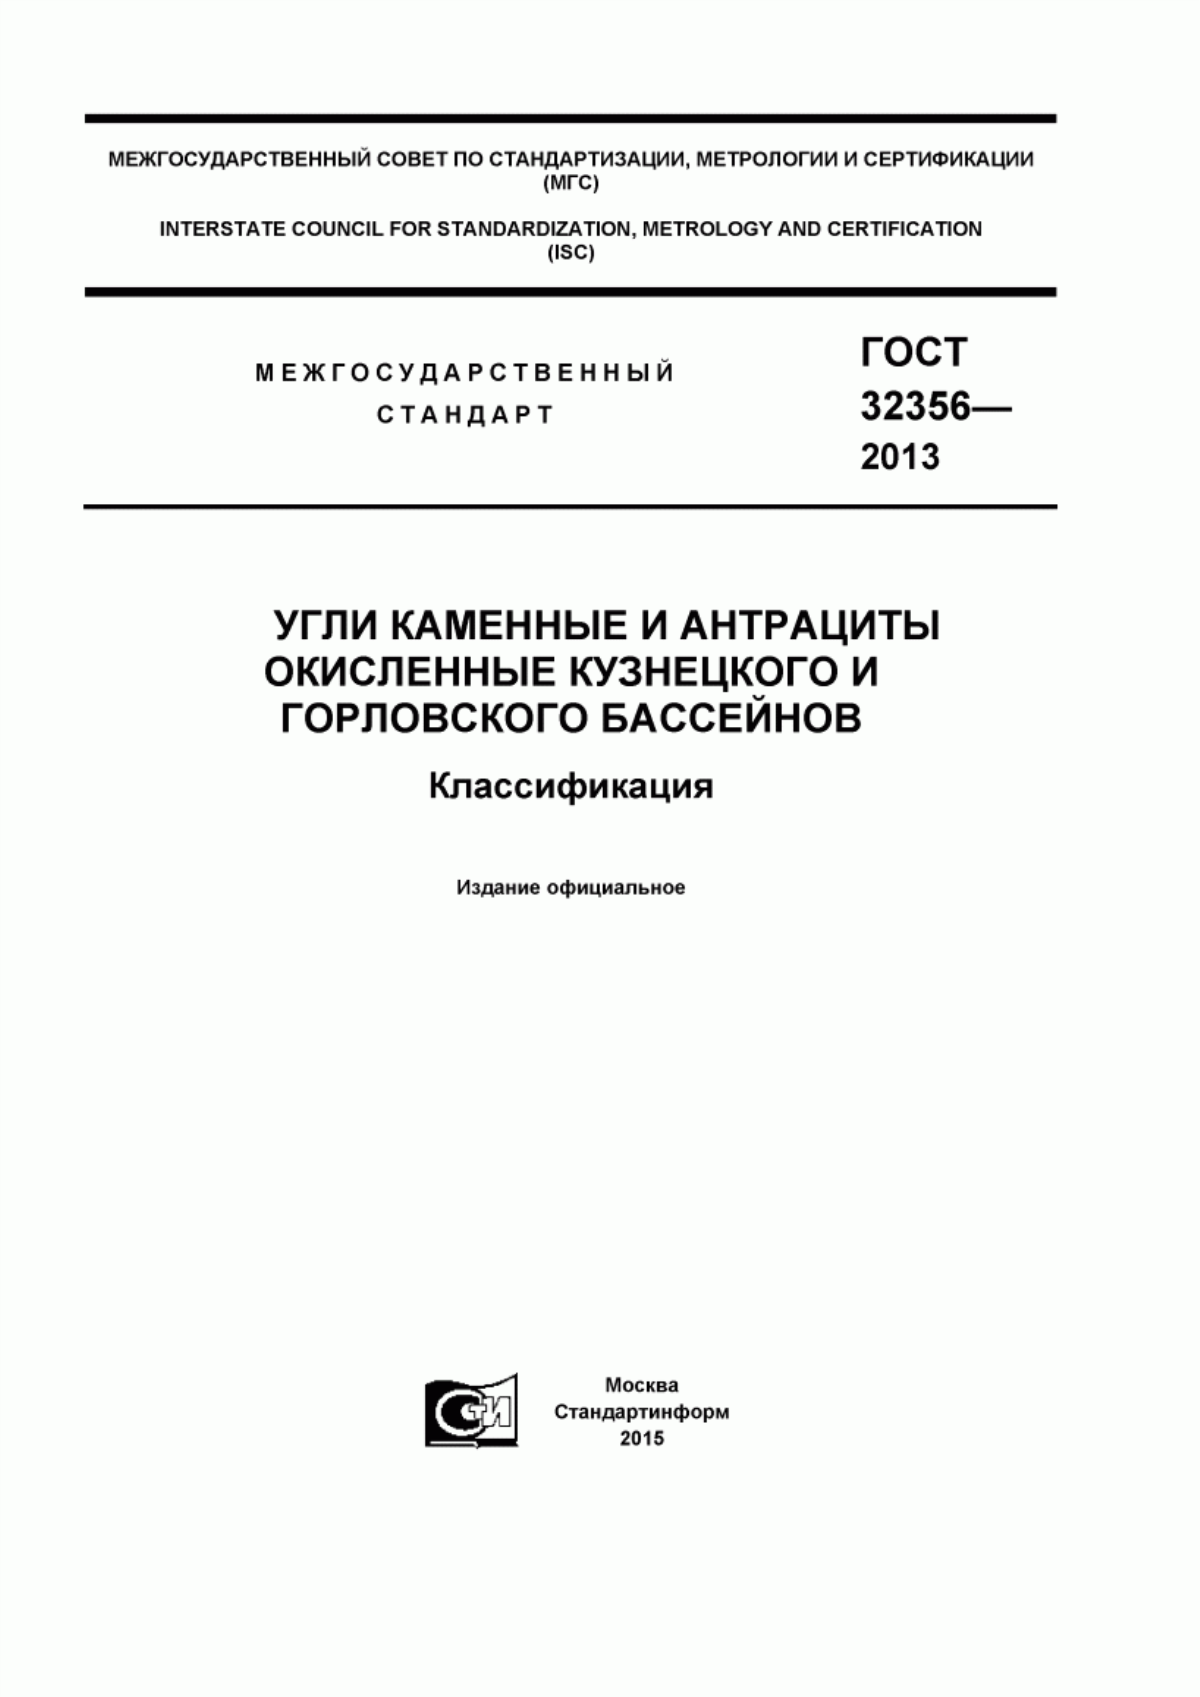 ГОСТ 32356-2013 Угли каменные и антрациты окисленные Кузнецкого и Горловского бассейнов. Классификация